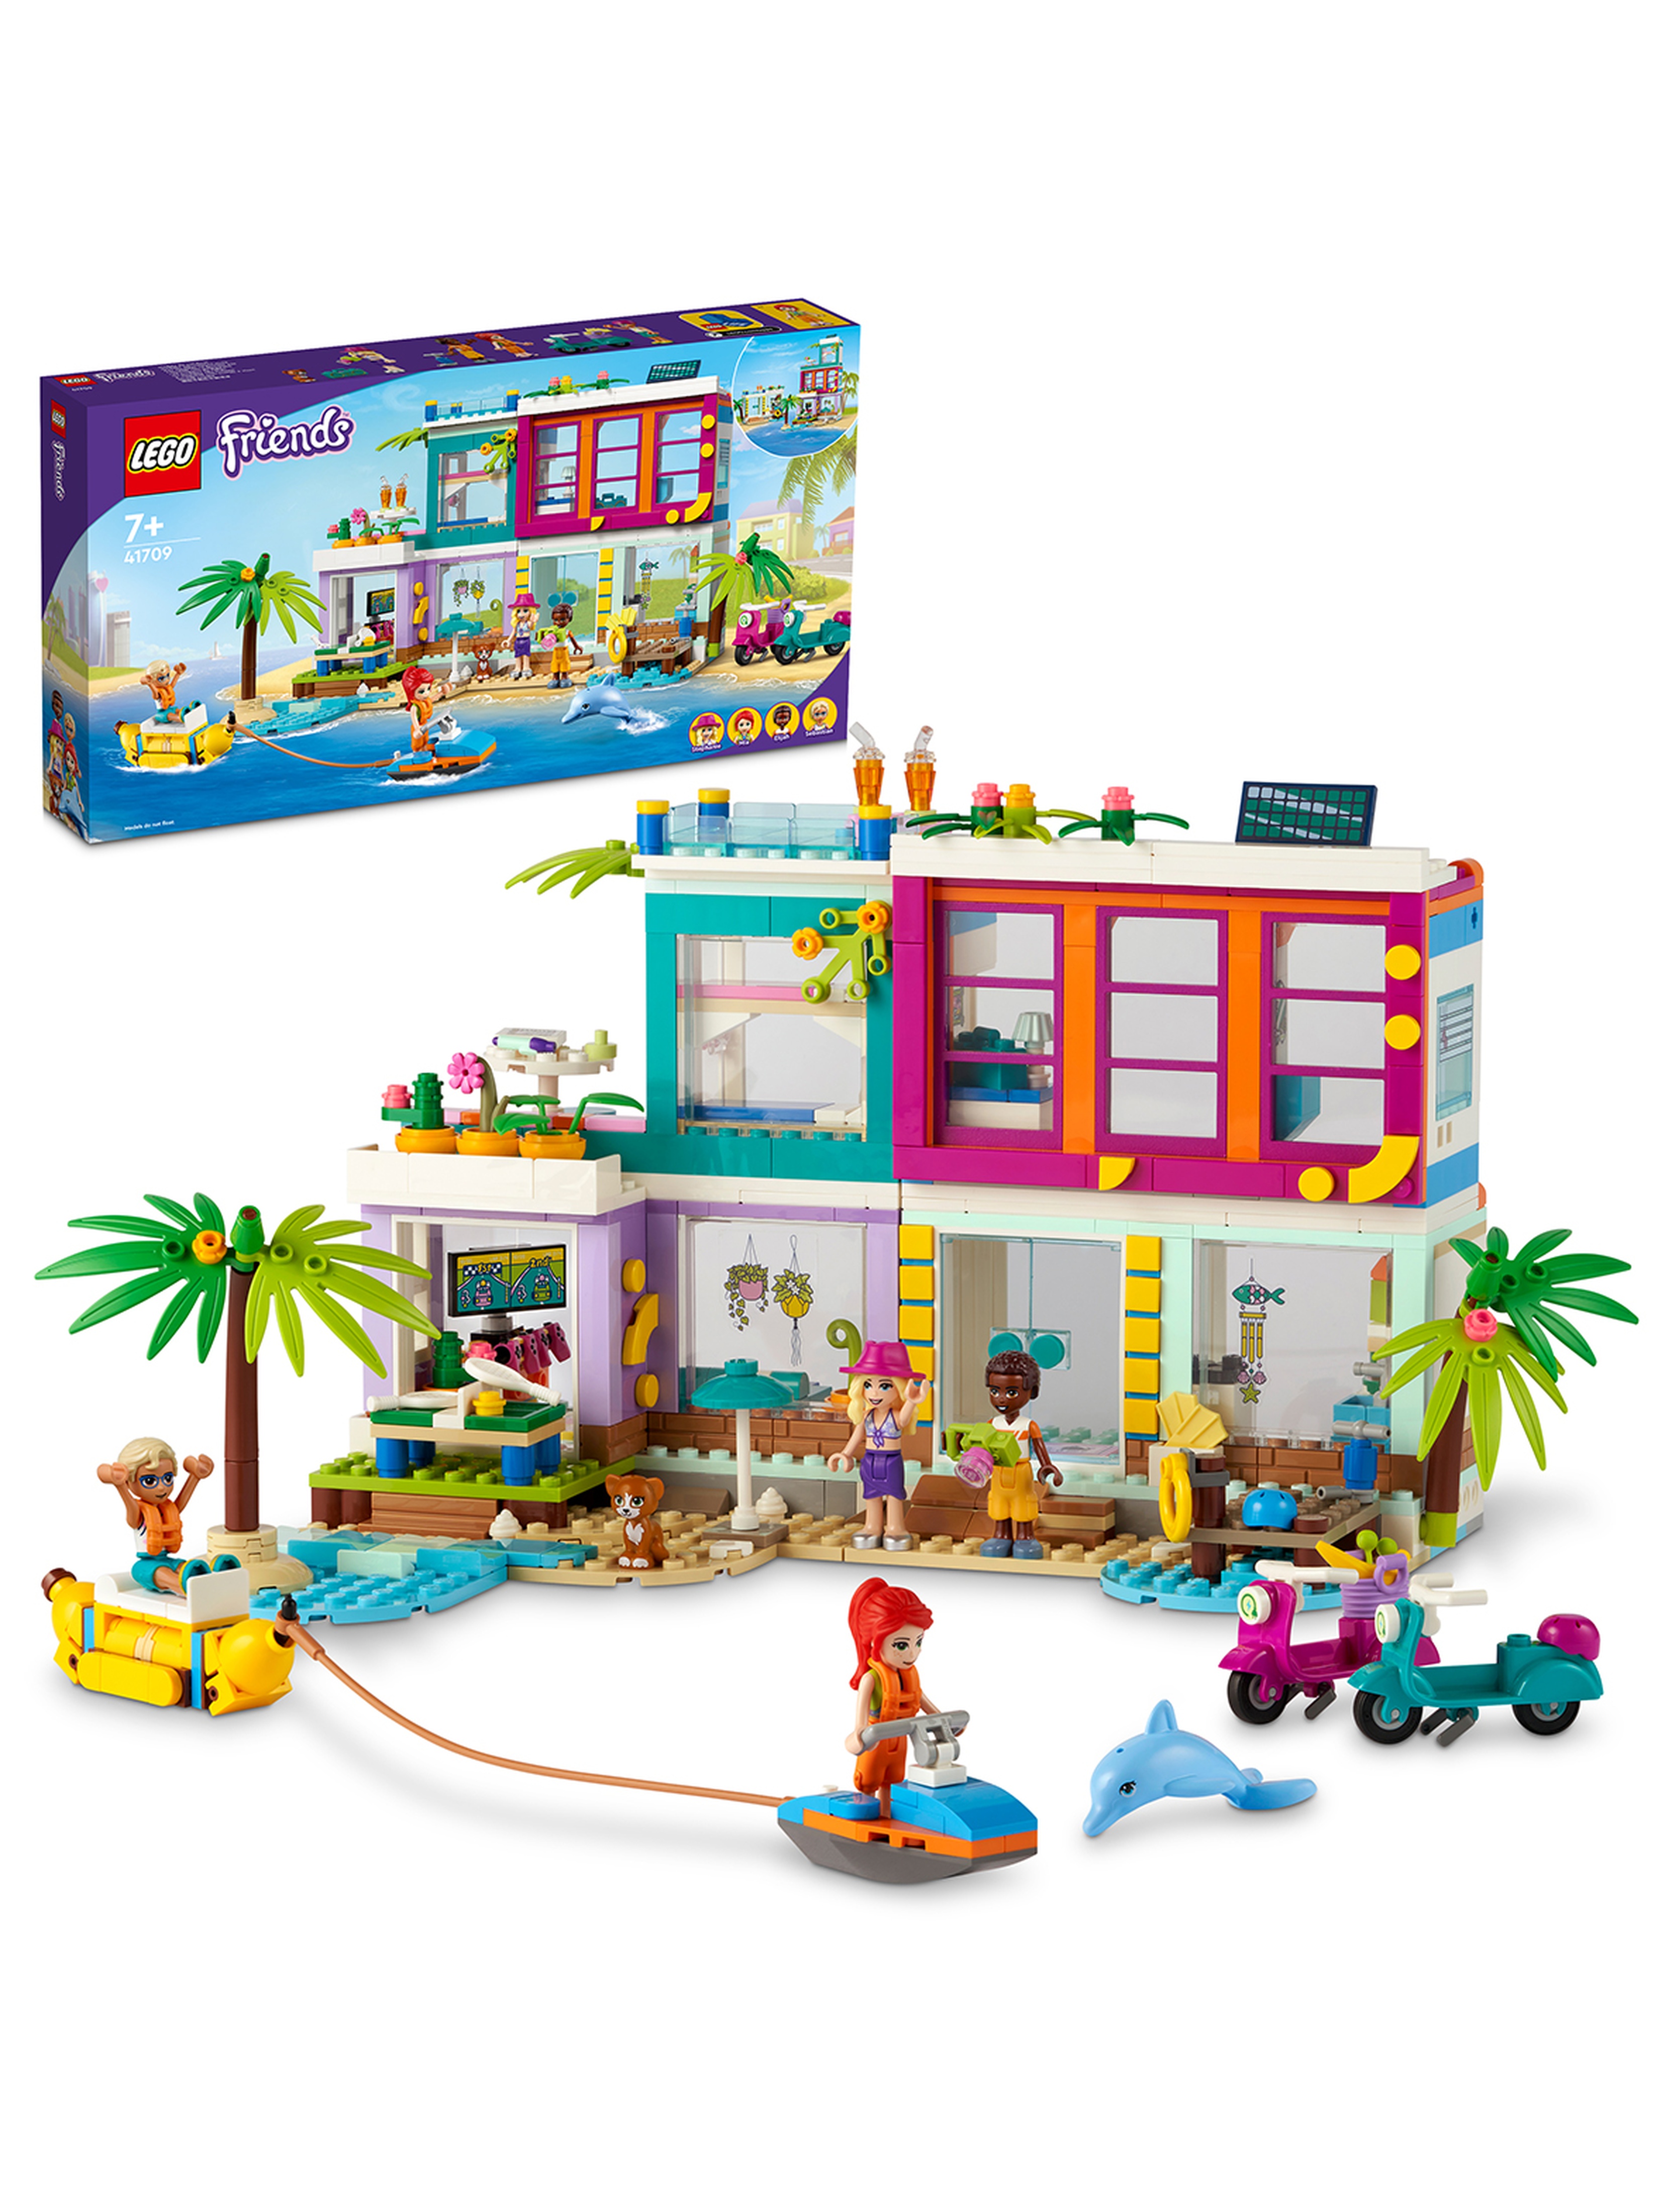 LEGO Friends - Wakacyjny domek na plaży 41709 - 686 elementów, wiek 7+